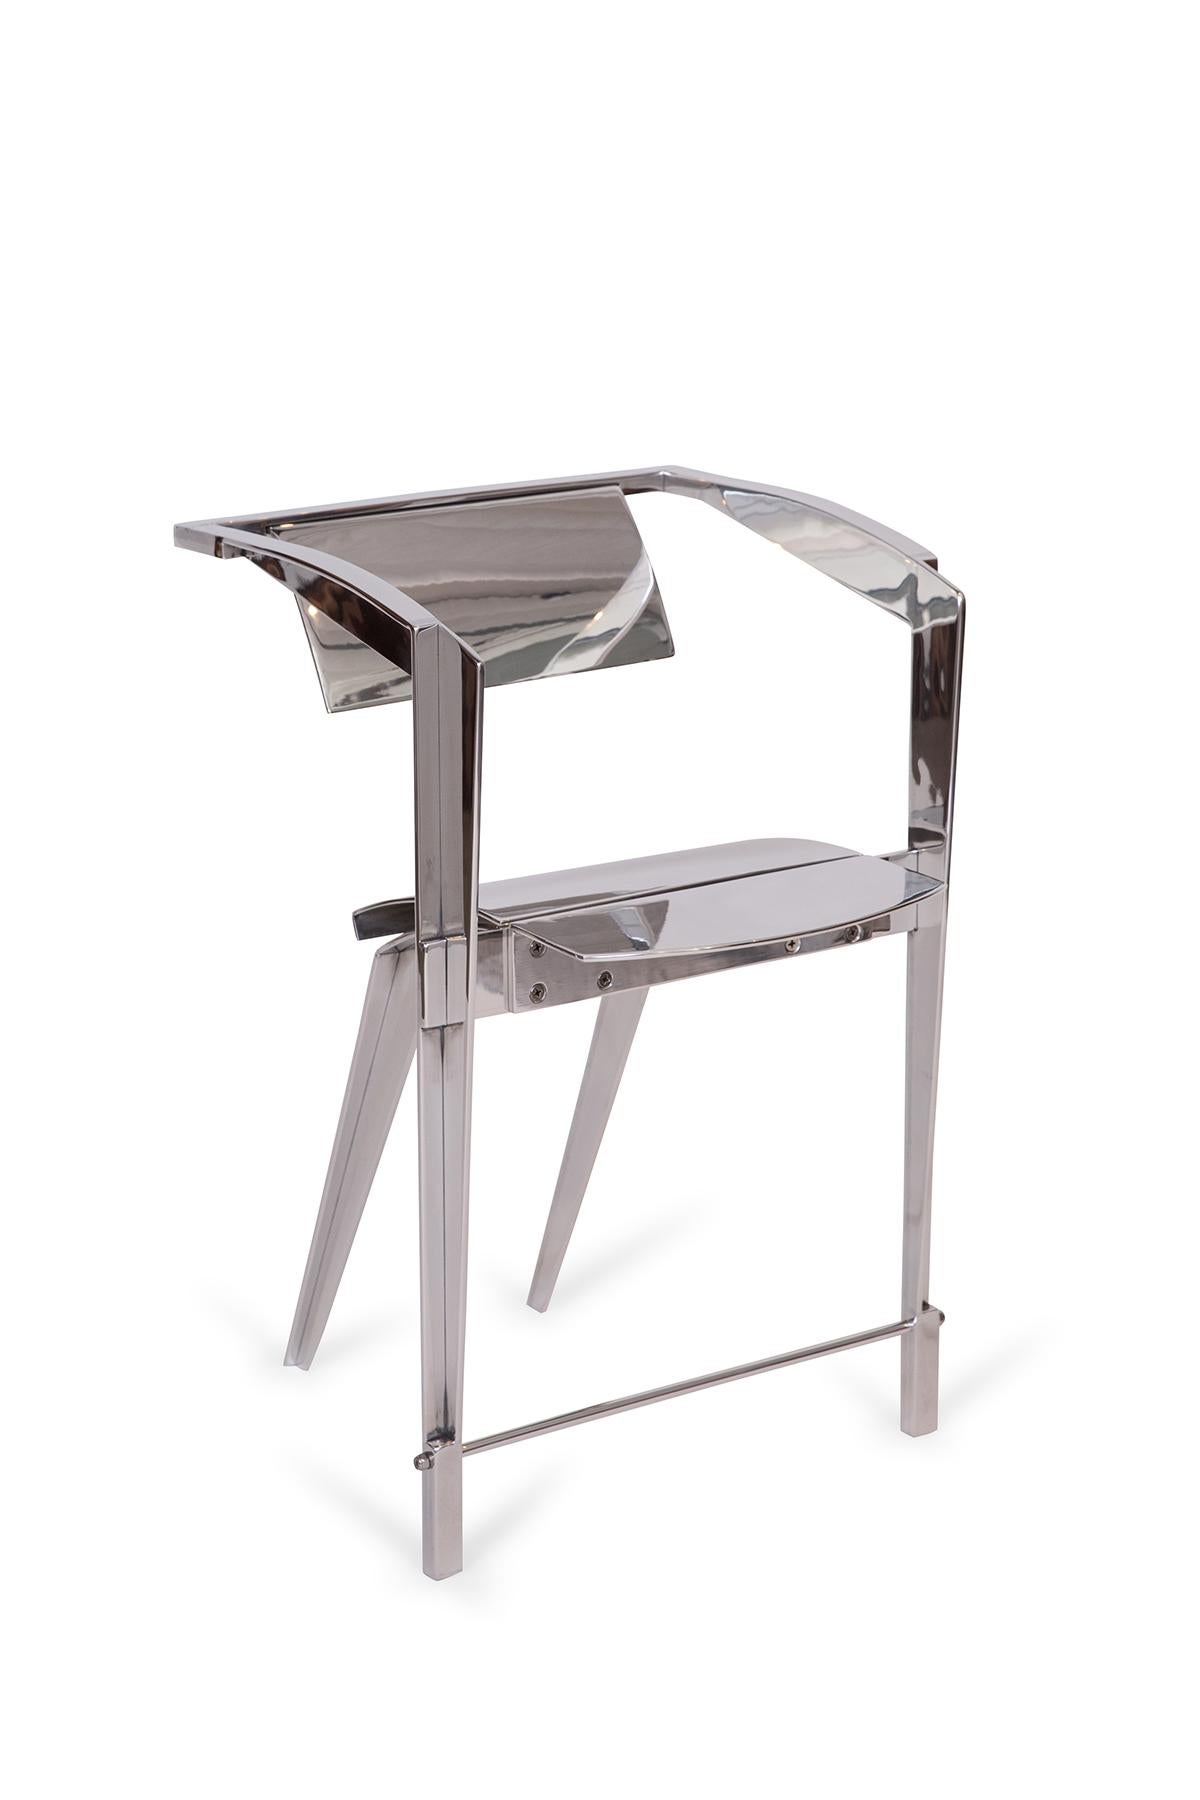 Prototyp eines hochglanzpolierten Aluminiumstuhls des Designers Robert Whitton aus Arizona. Es eignet sich gut als einprägsame Sitzgelegenheit oder als Statement-Stück, das als künstlerisches skulpturales Objekt verwendet wird.